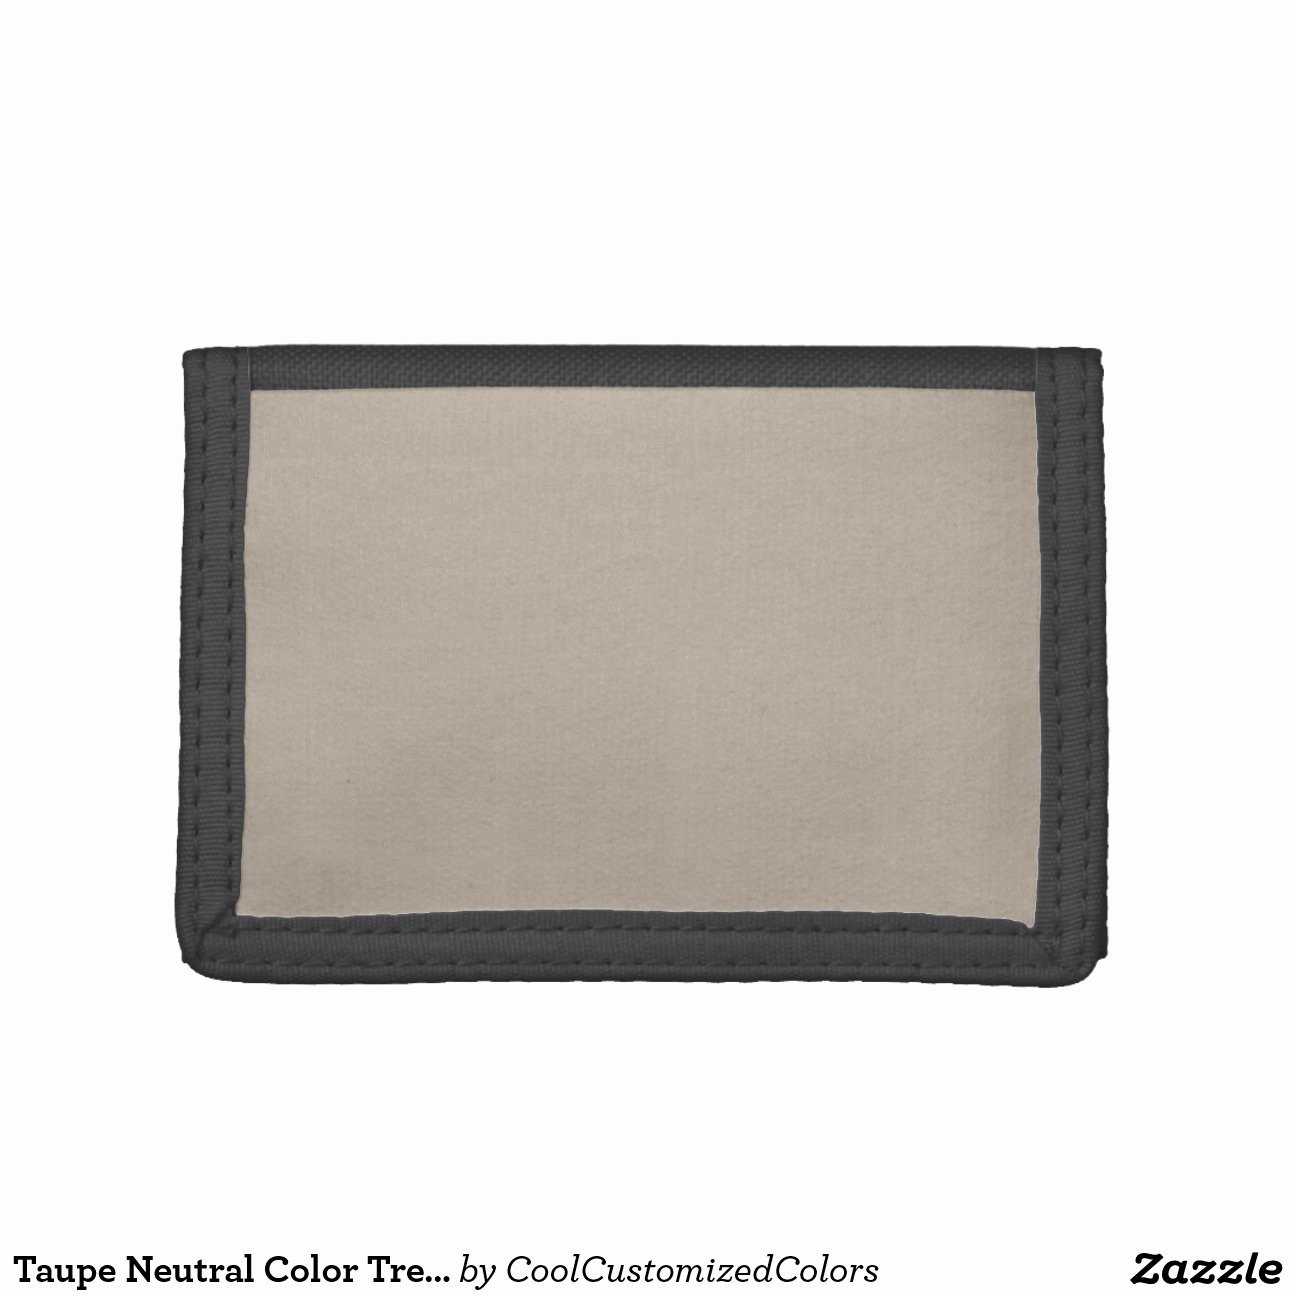 Wallet Card Template Word Elegant 14 Of 2x3 Blank Wallet Template